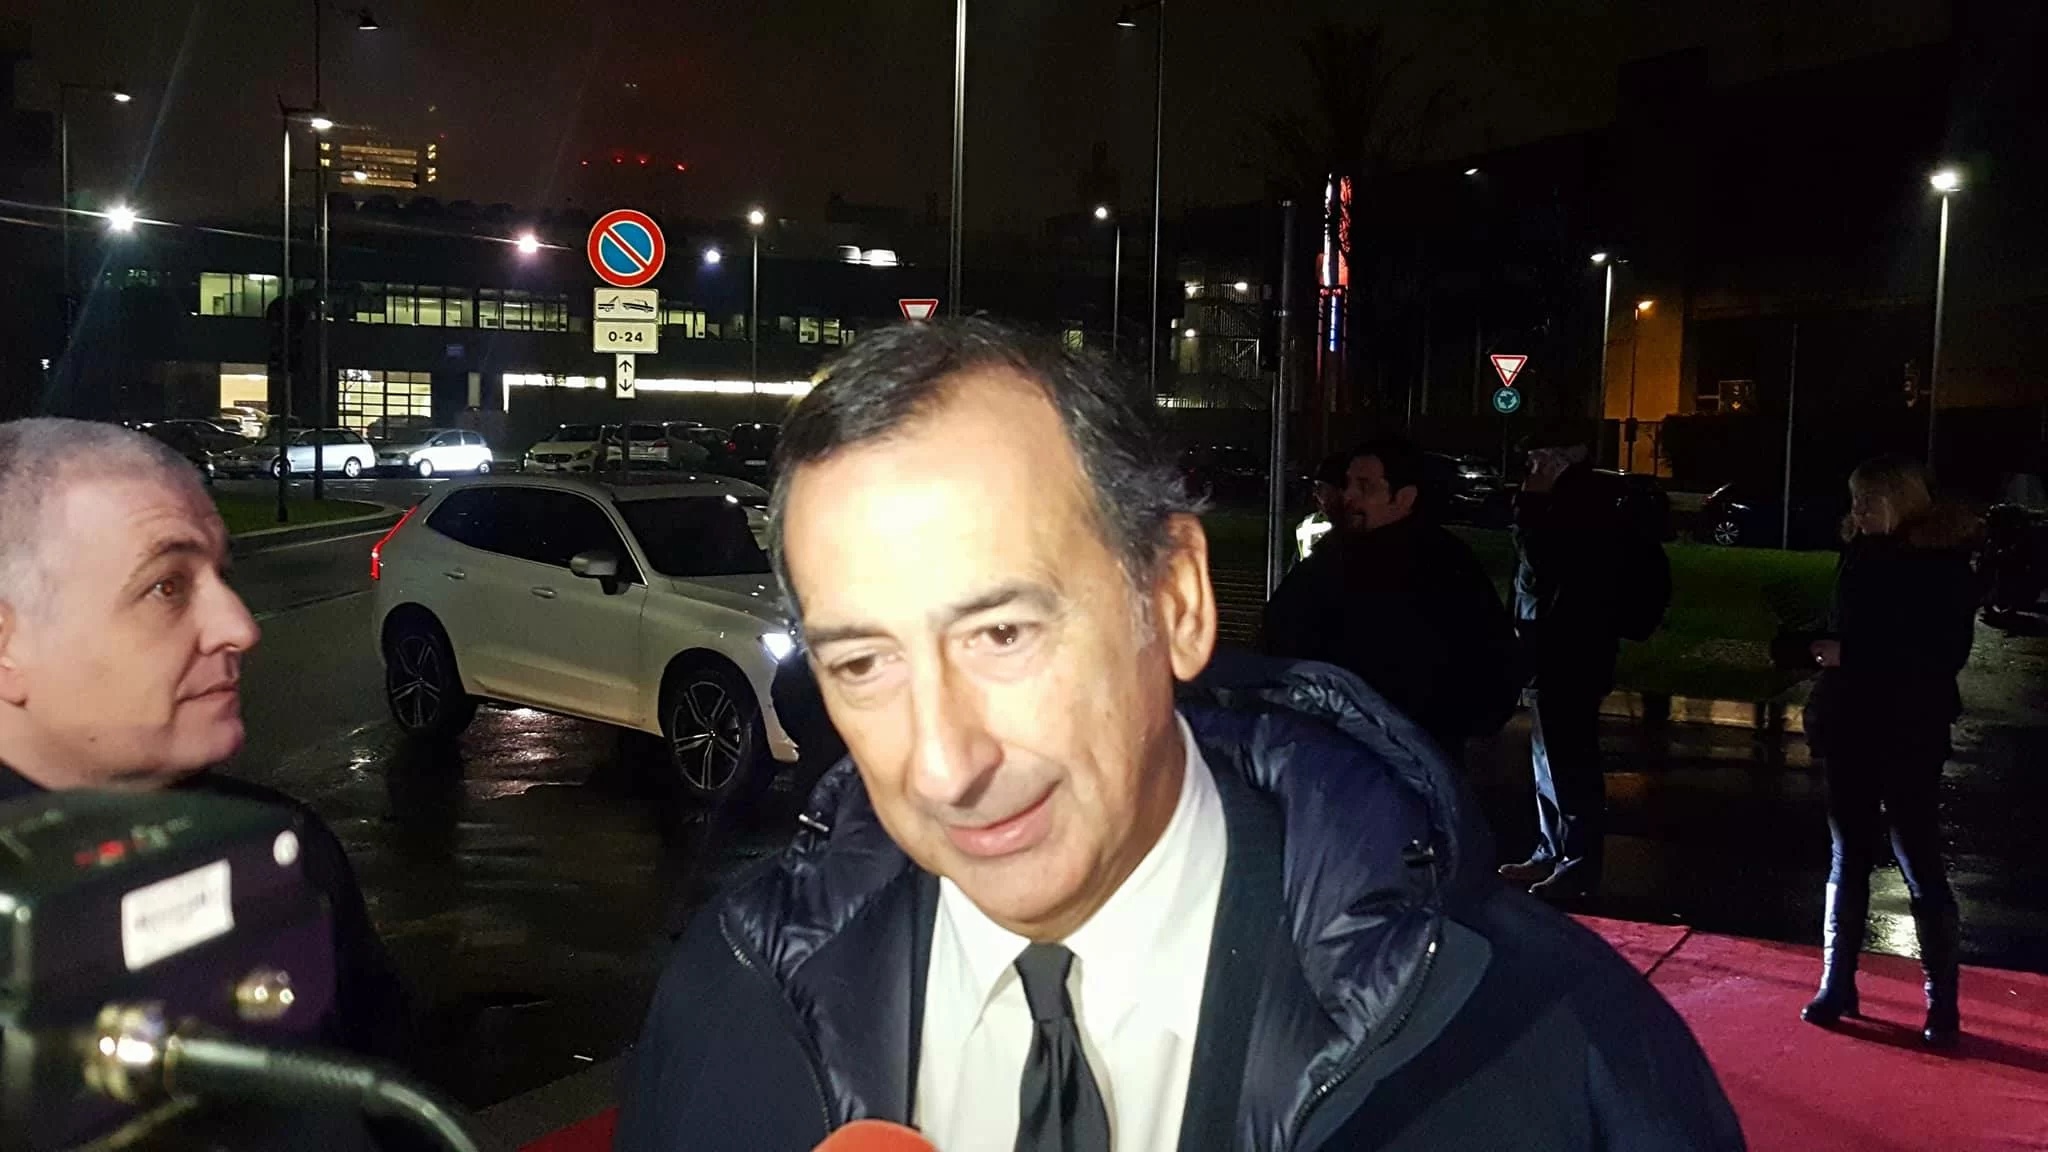 Il sindaco Sala: “Il Milan vuole uno stadio suo, bisogna capire se ci sono le possibilità”